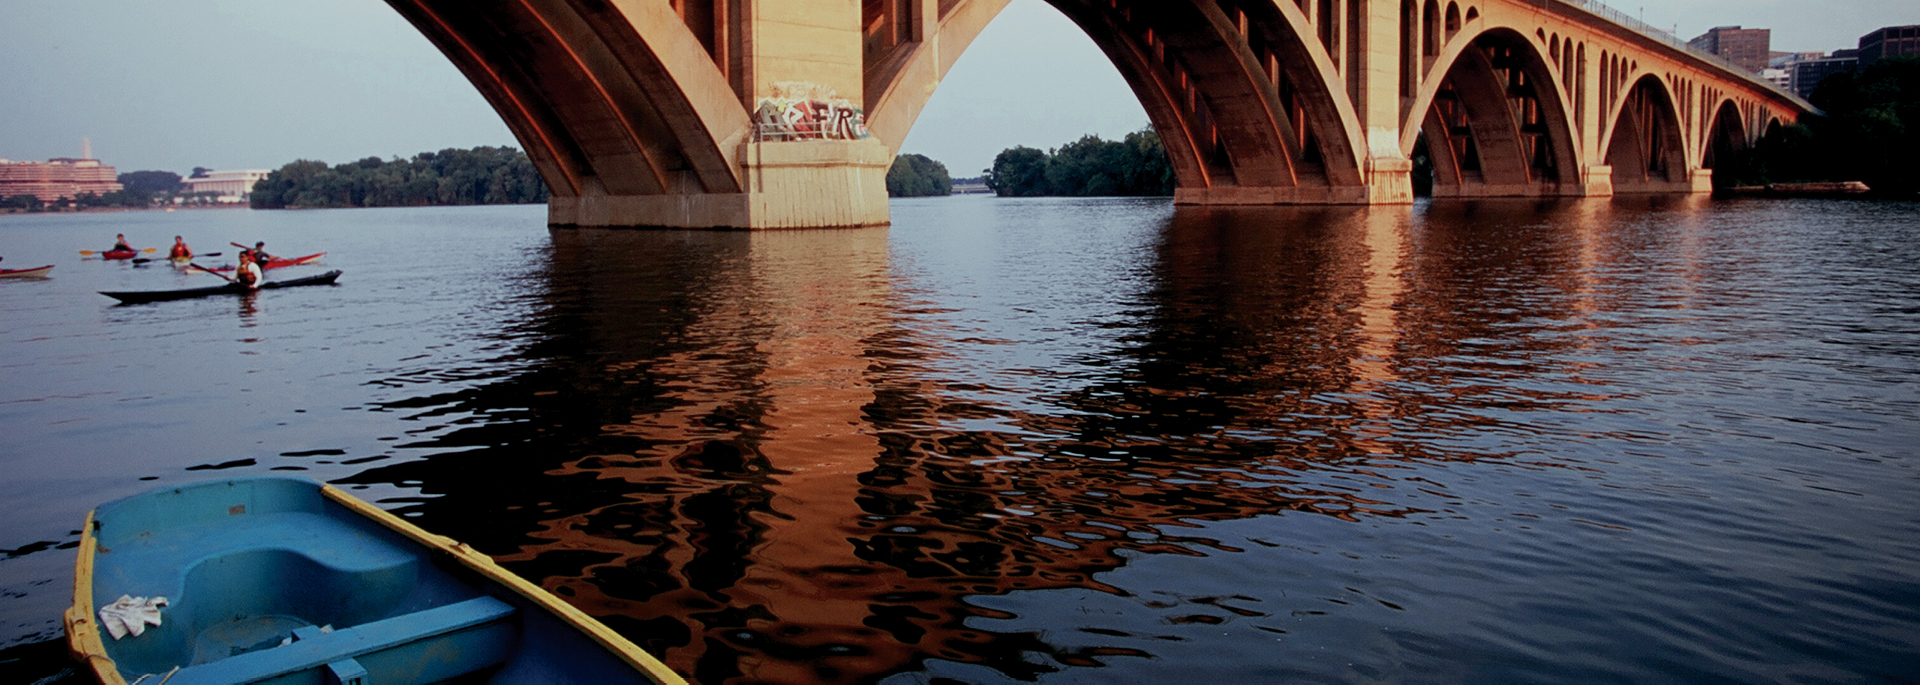 front of blue kayak floating on rive under large bridge